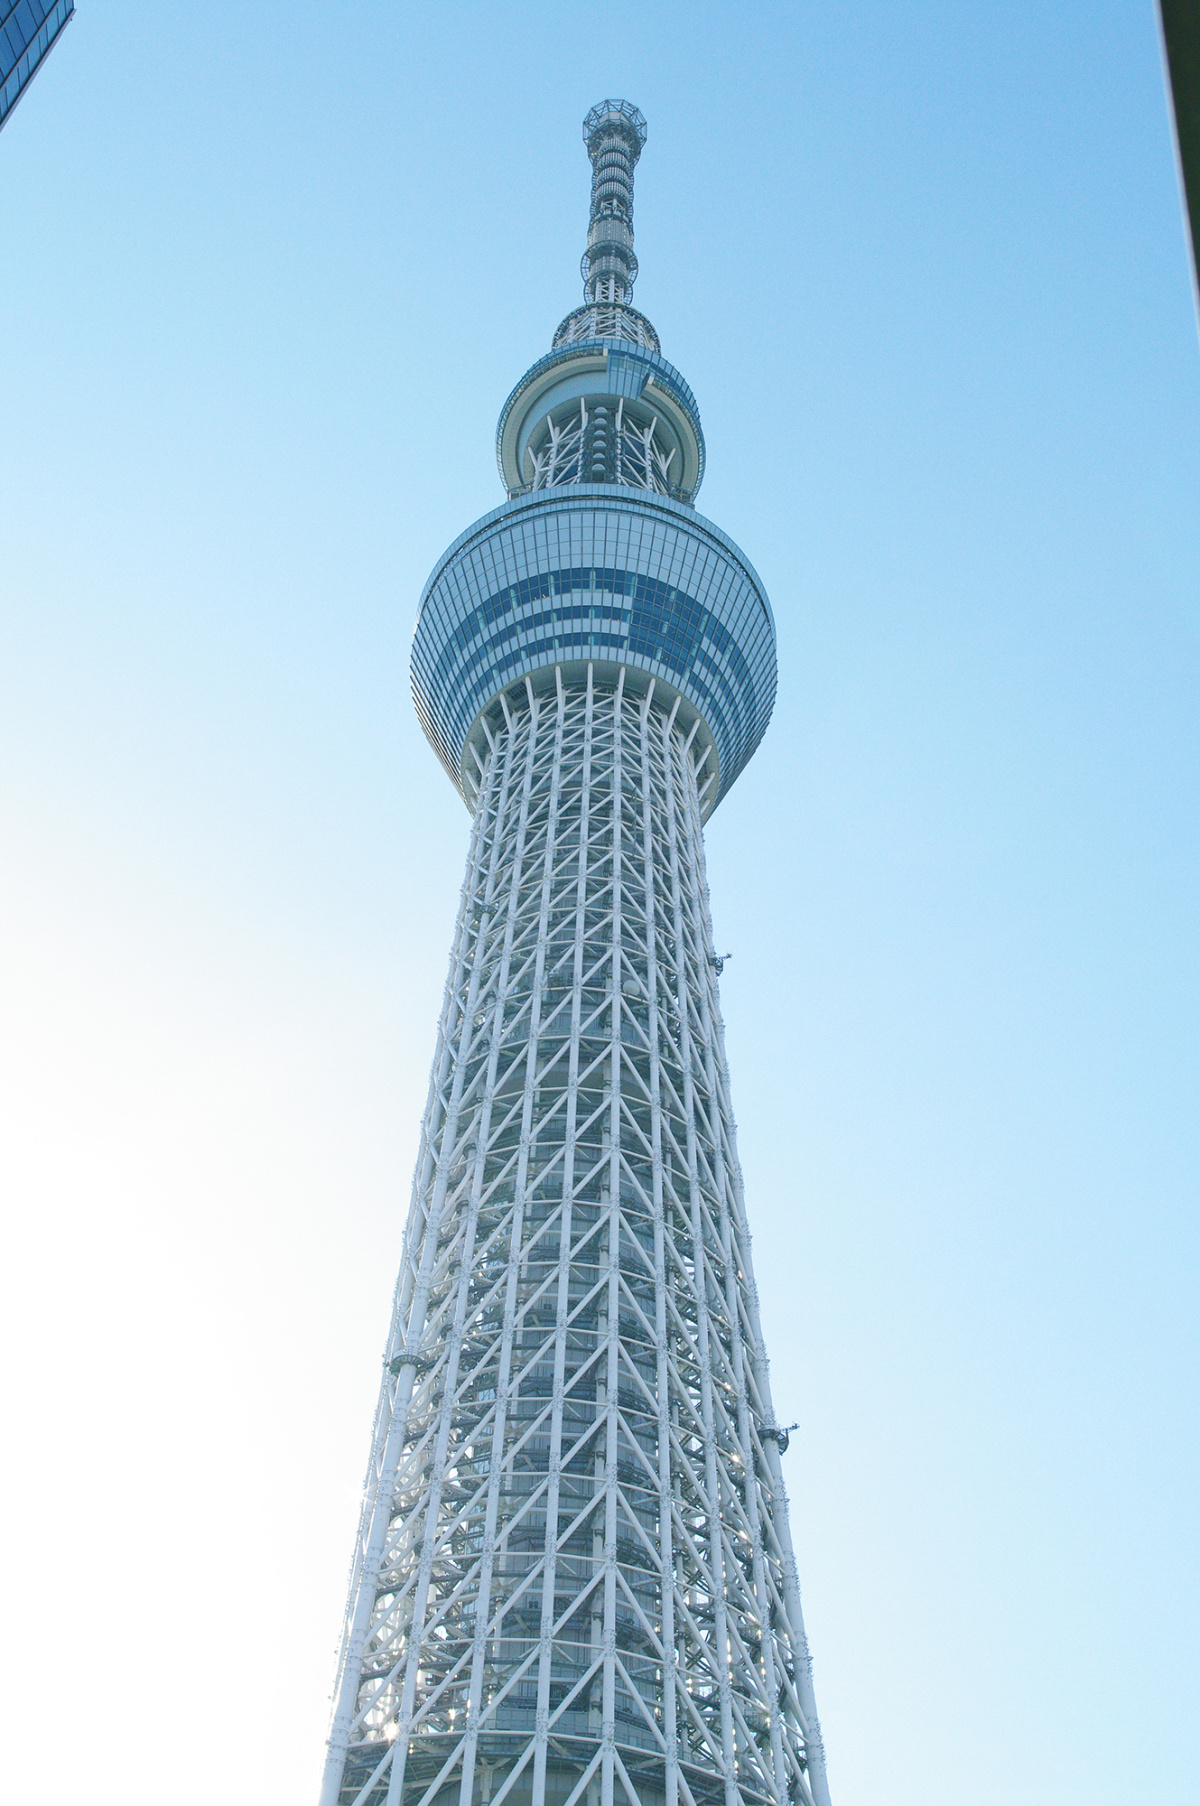 日本东京晴空塔(天空树) 3104×4672免费图片